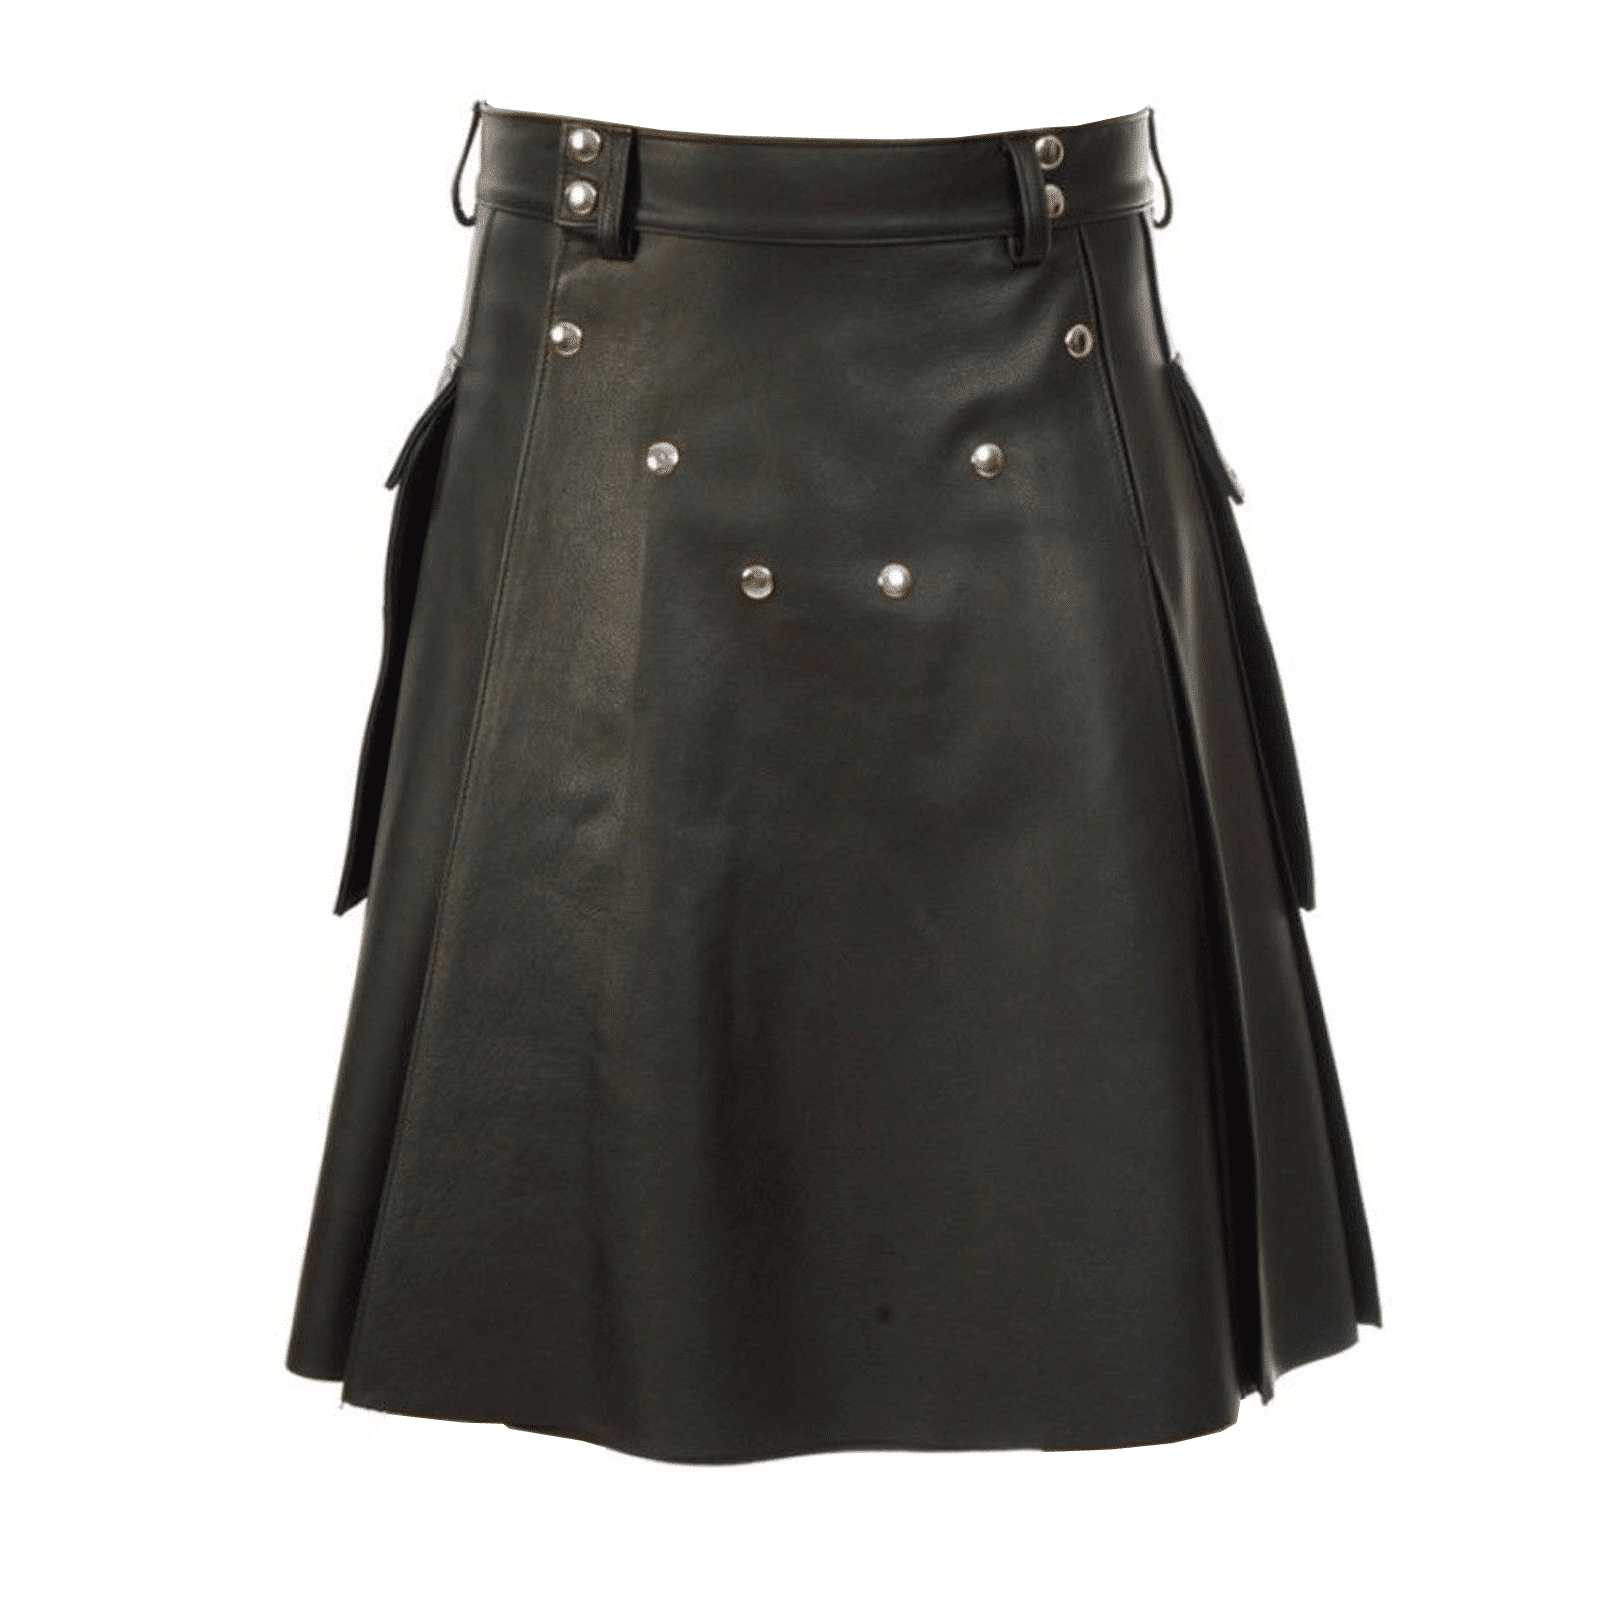 Buy Studded Men's Leather Kilt - Kilts for Men 00123 | Kilt and Jacks